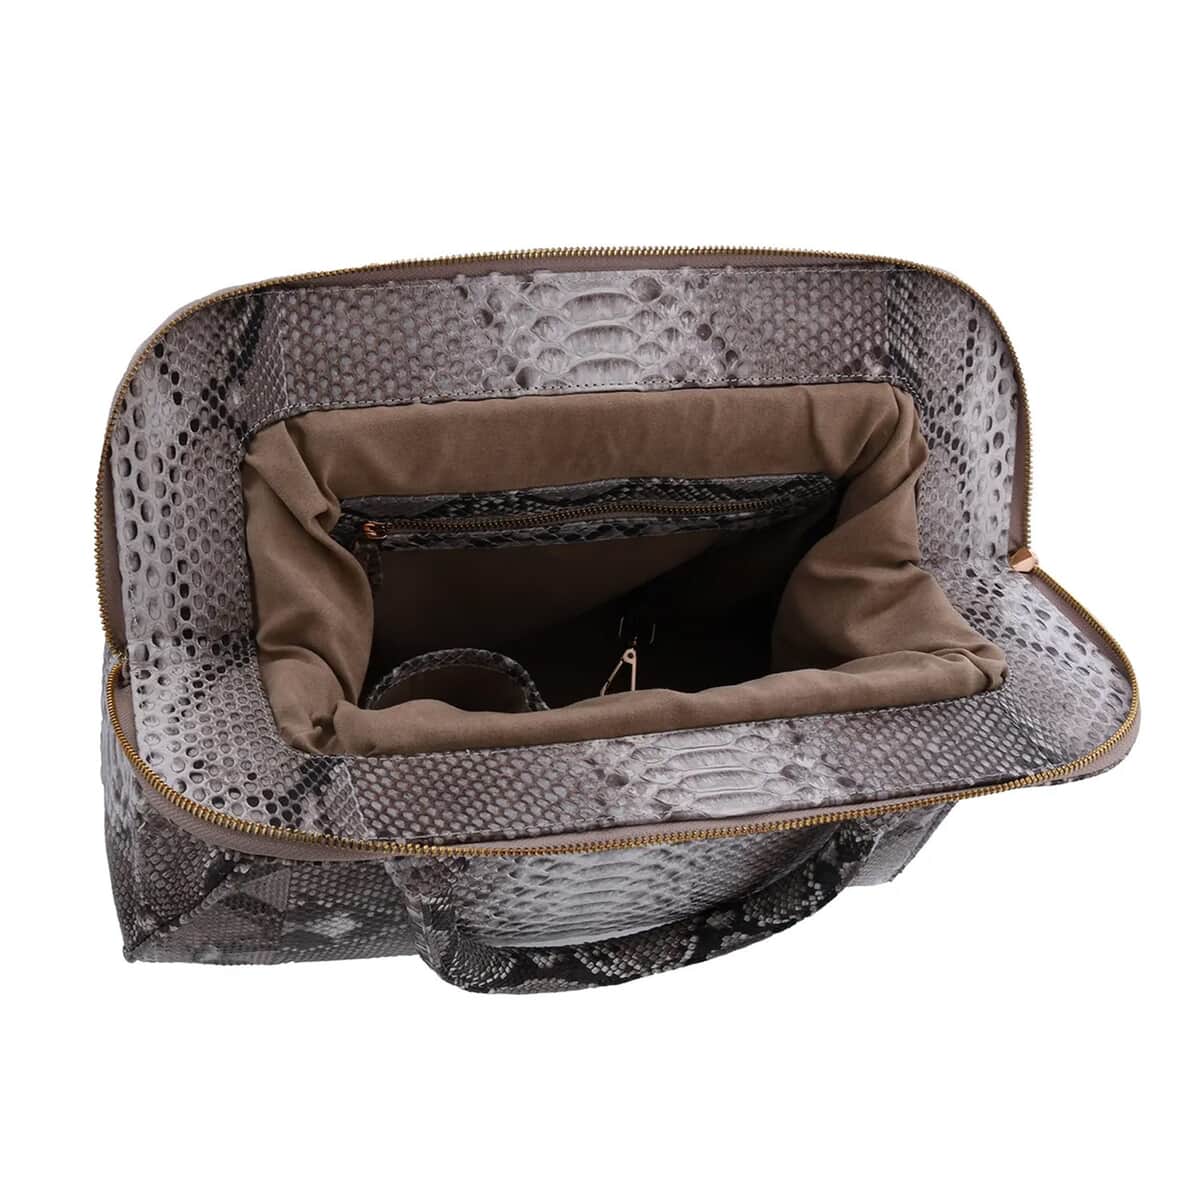 The Pelle Python Skin Bag Collection Natural Color 100% Genuine Python Leather Tote Bag for Women, Satchel Purse, Shoulder Handbag, Designer Tote Bag image number 4